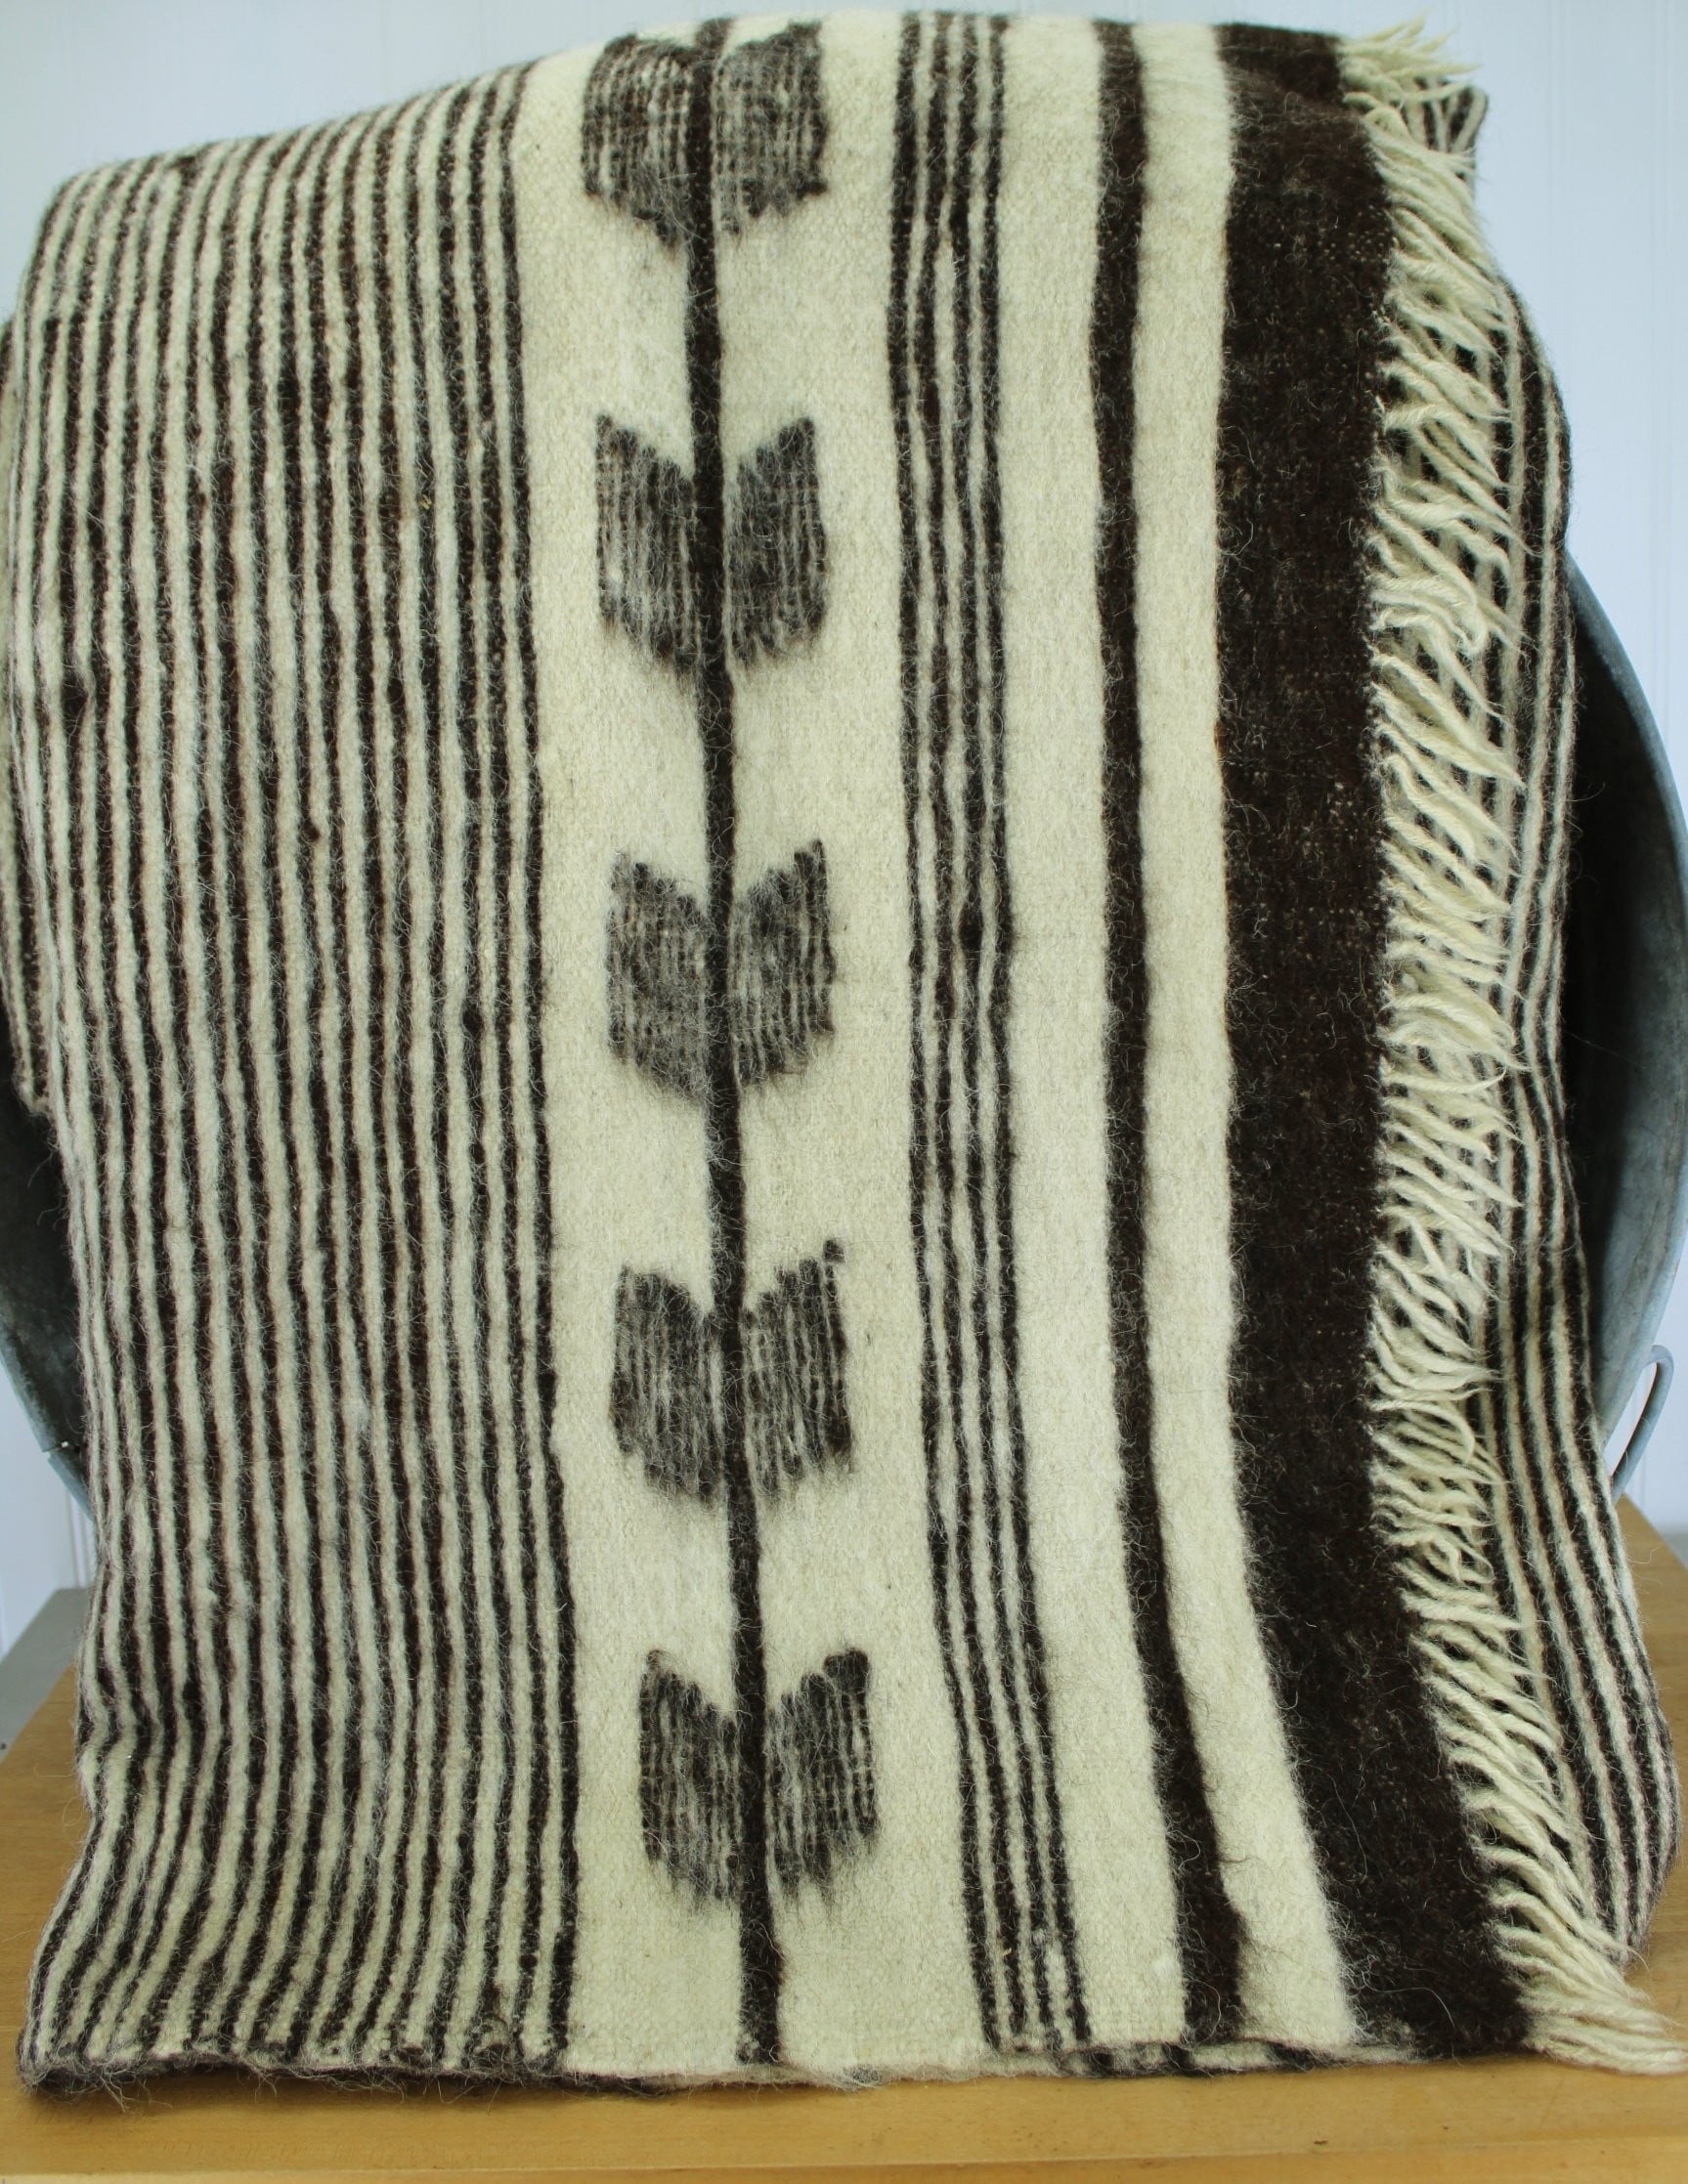 Wool Alpaca Travel Rug Heavy Bed Coverlet - Ivory Dark Brown - 80" X 64" - Area Rug heavyweight blanket cover